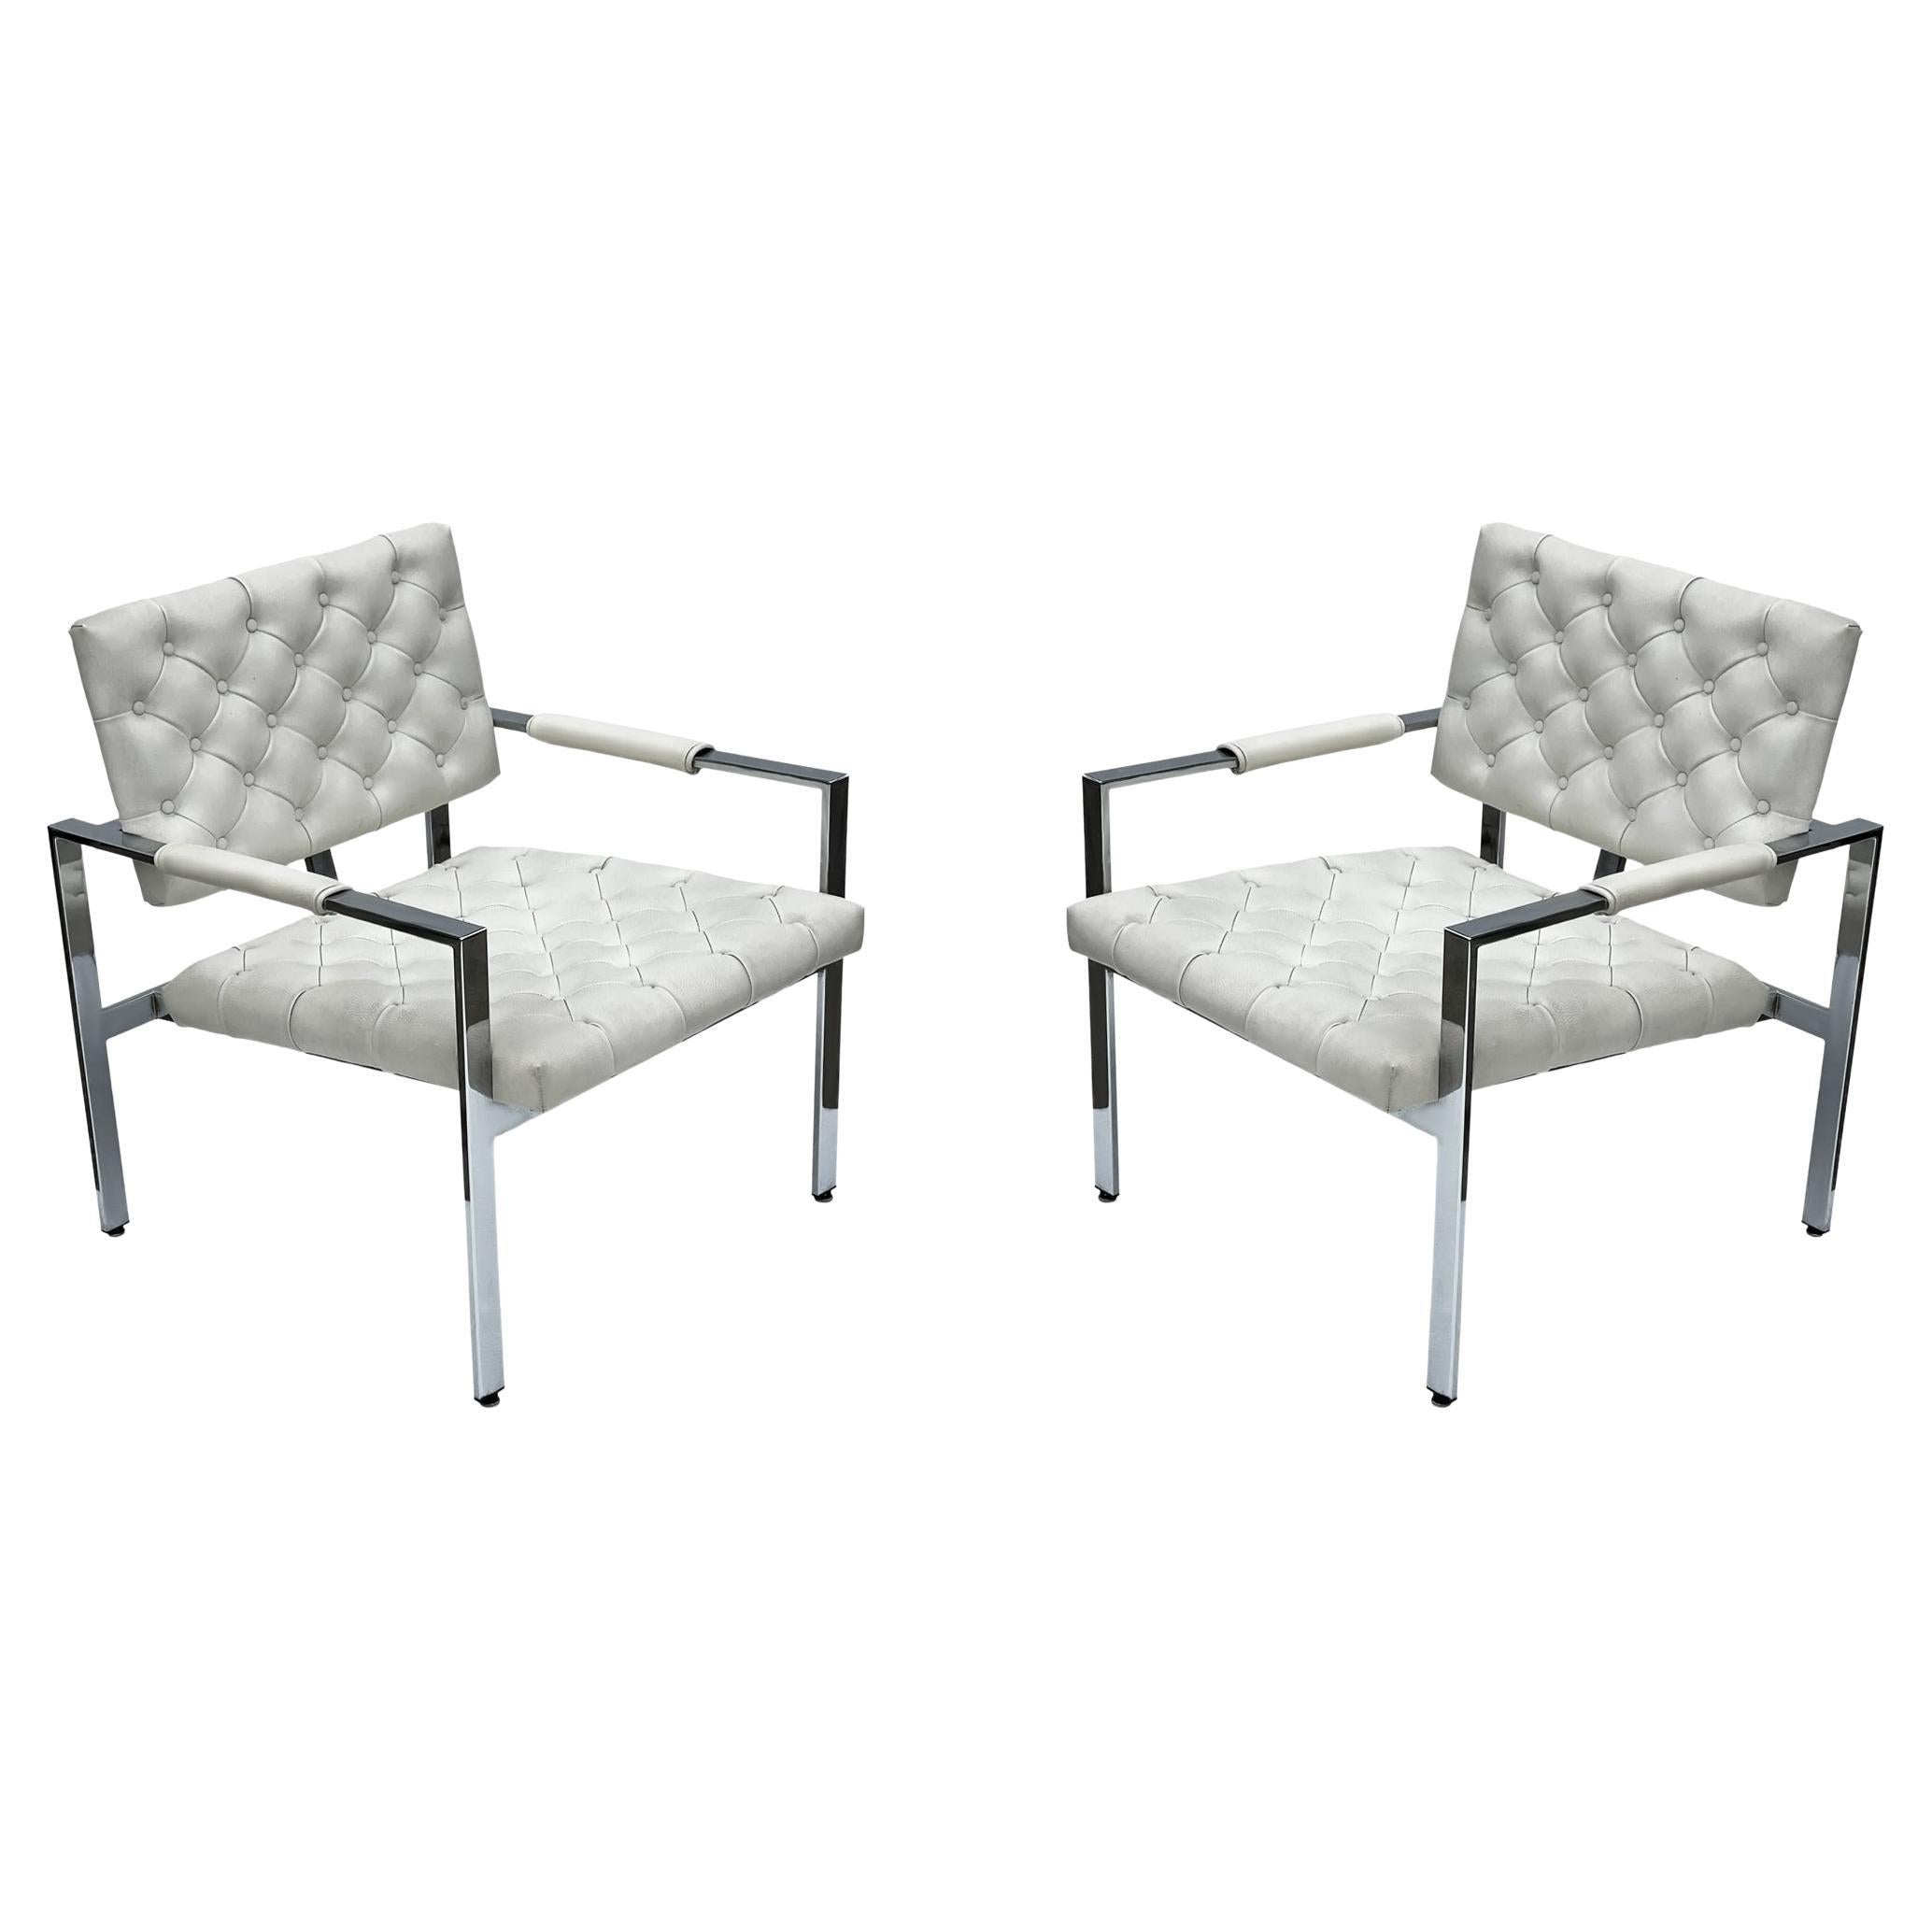 Paire de chaises longues matelassées chromées et blanches de style mi-siècle moderne d'après Harvey Probber